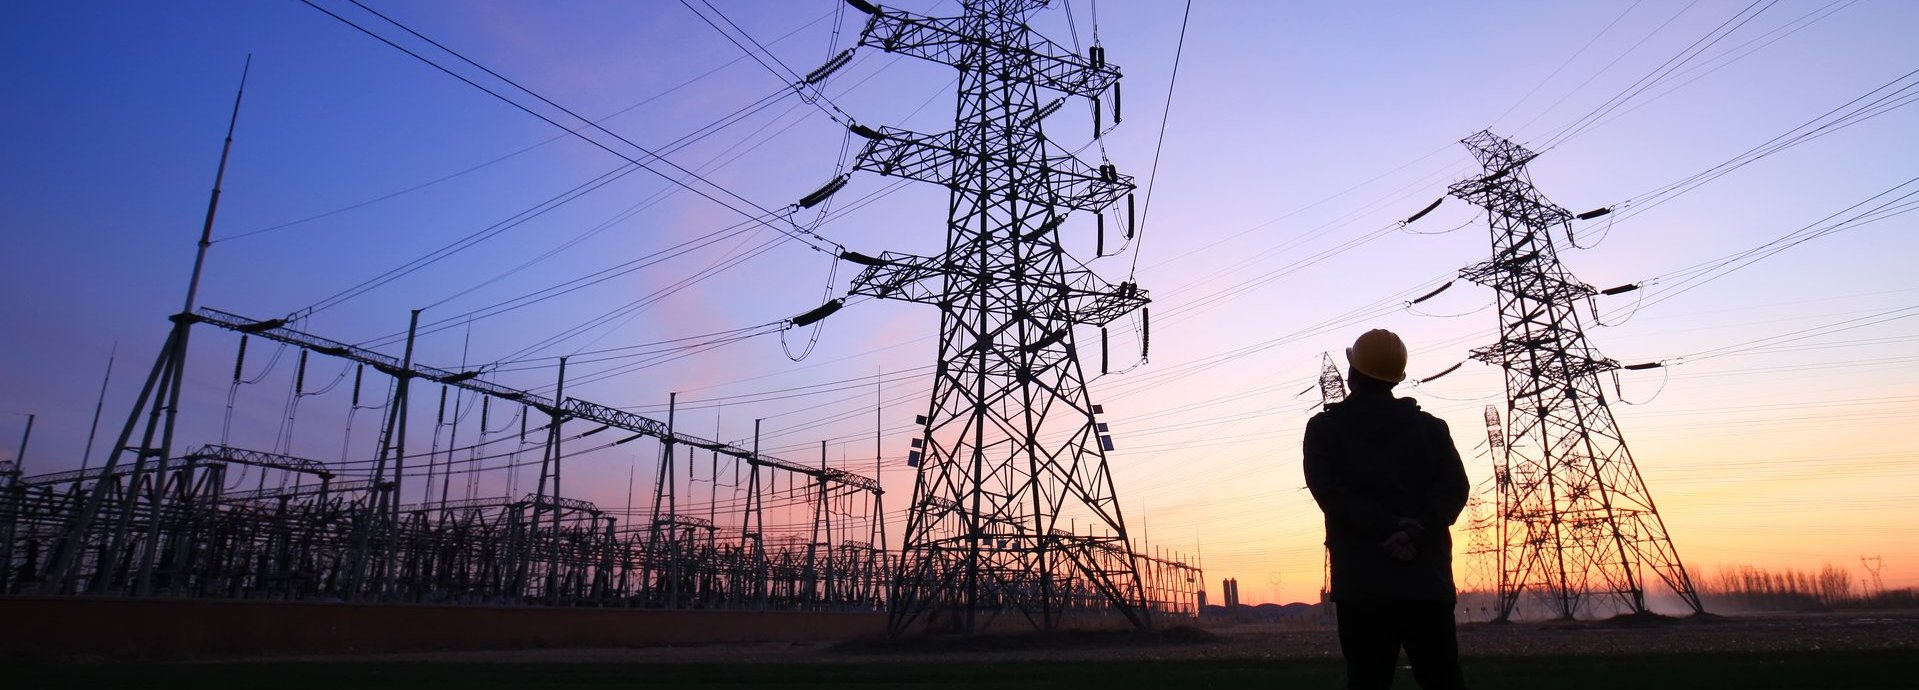 Ein Arbeiter steht bei Sonnenuntergang vor mehreren Stromleitern